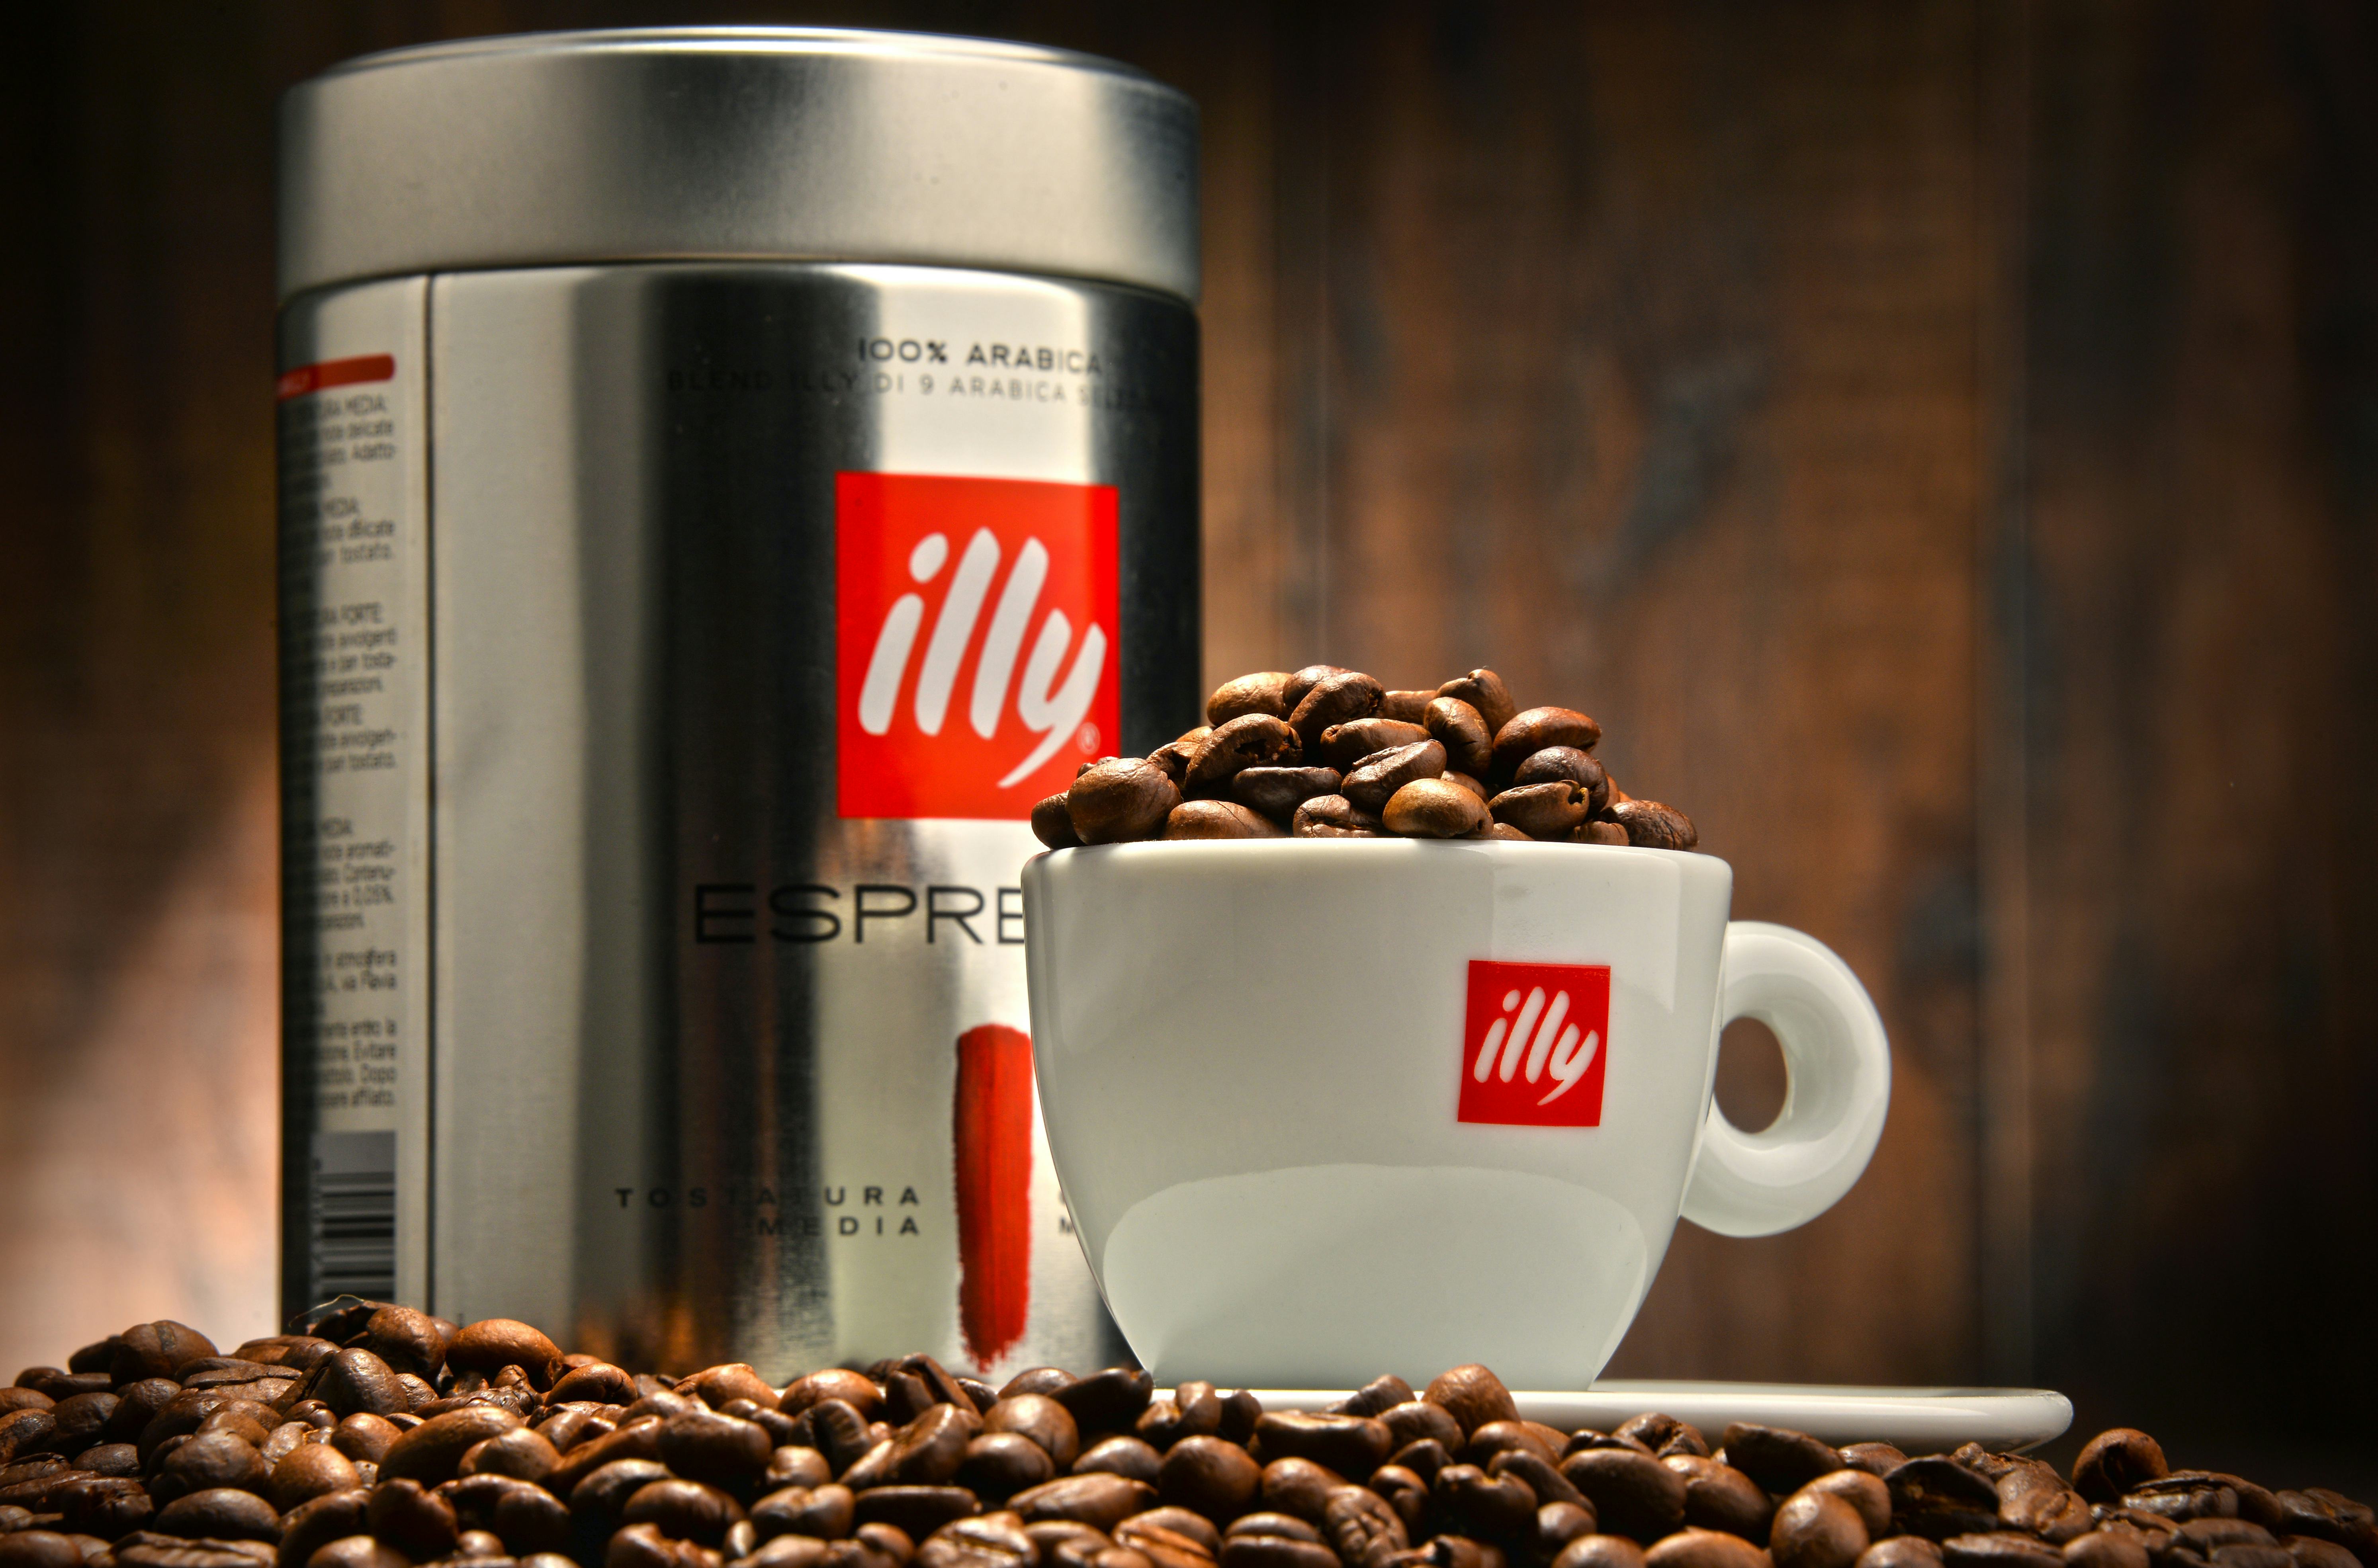 Grote koffieconcerns willen Illy overnemen